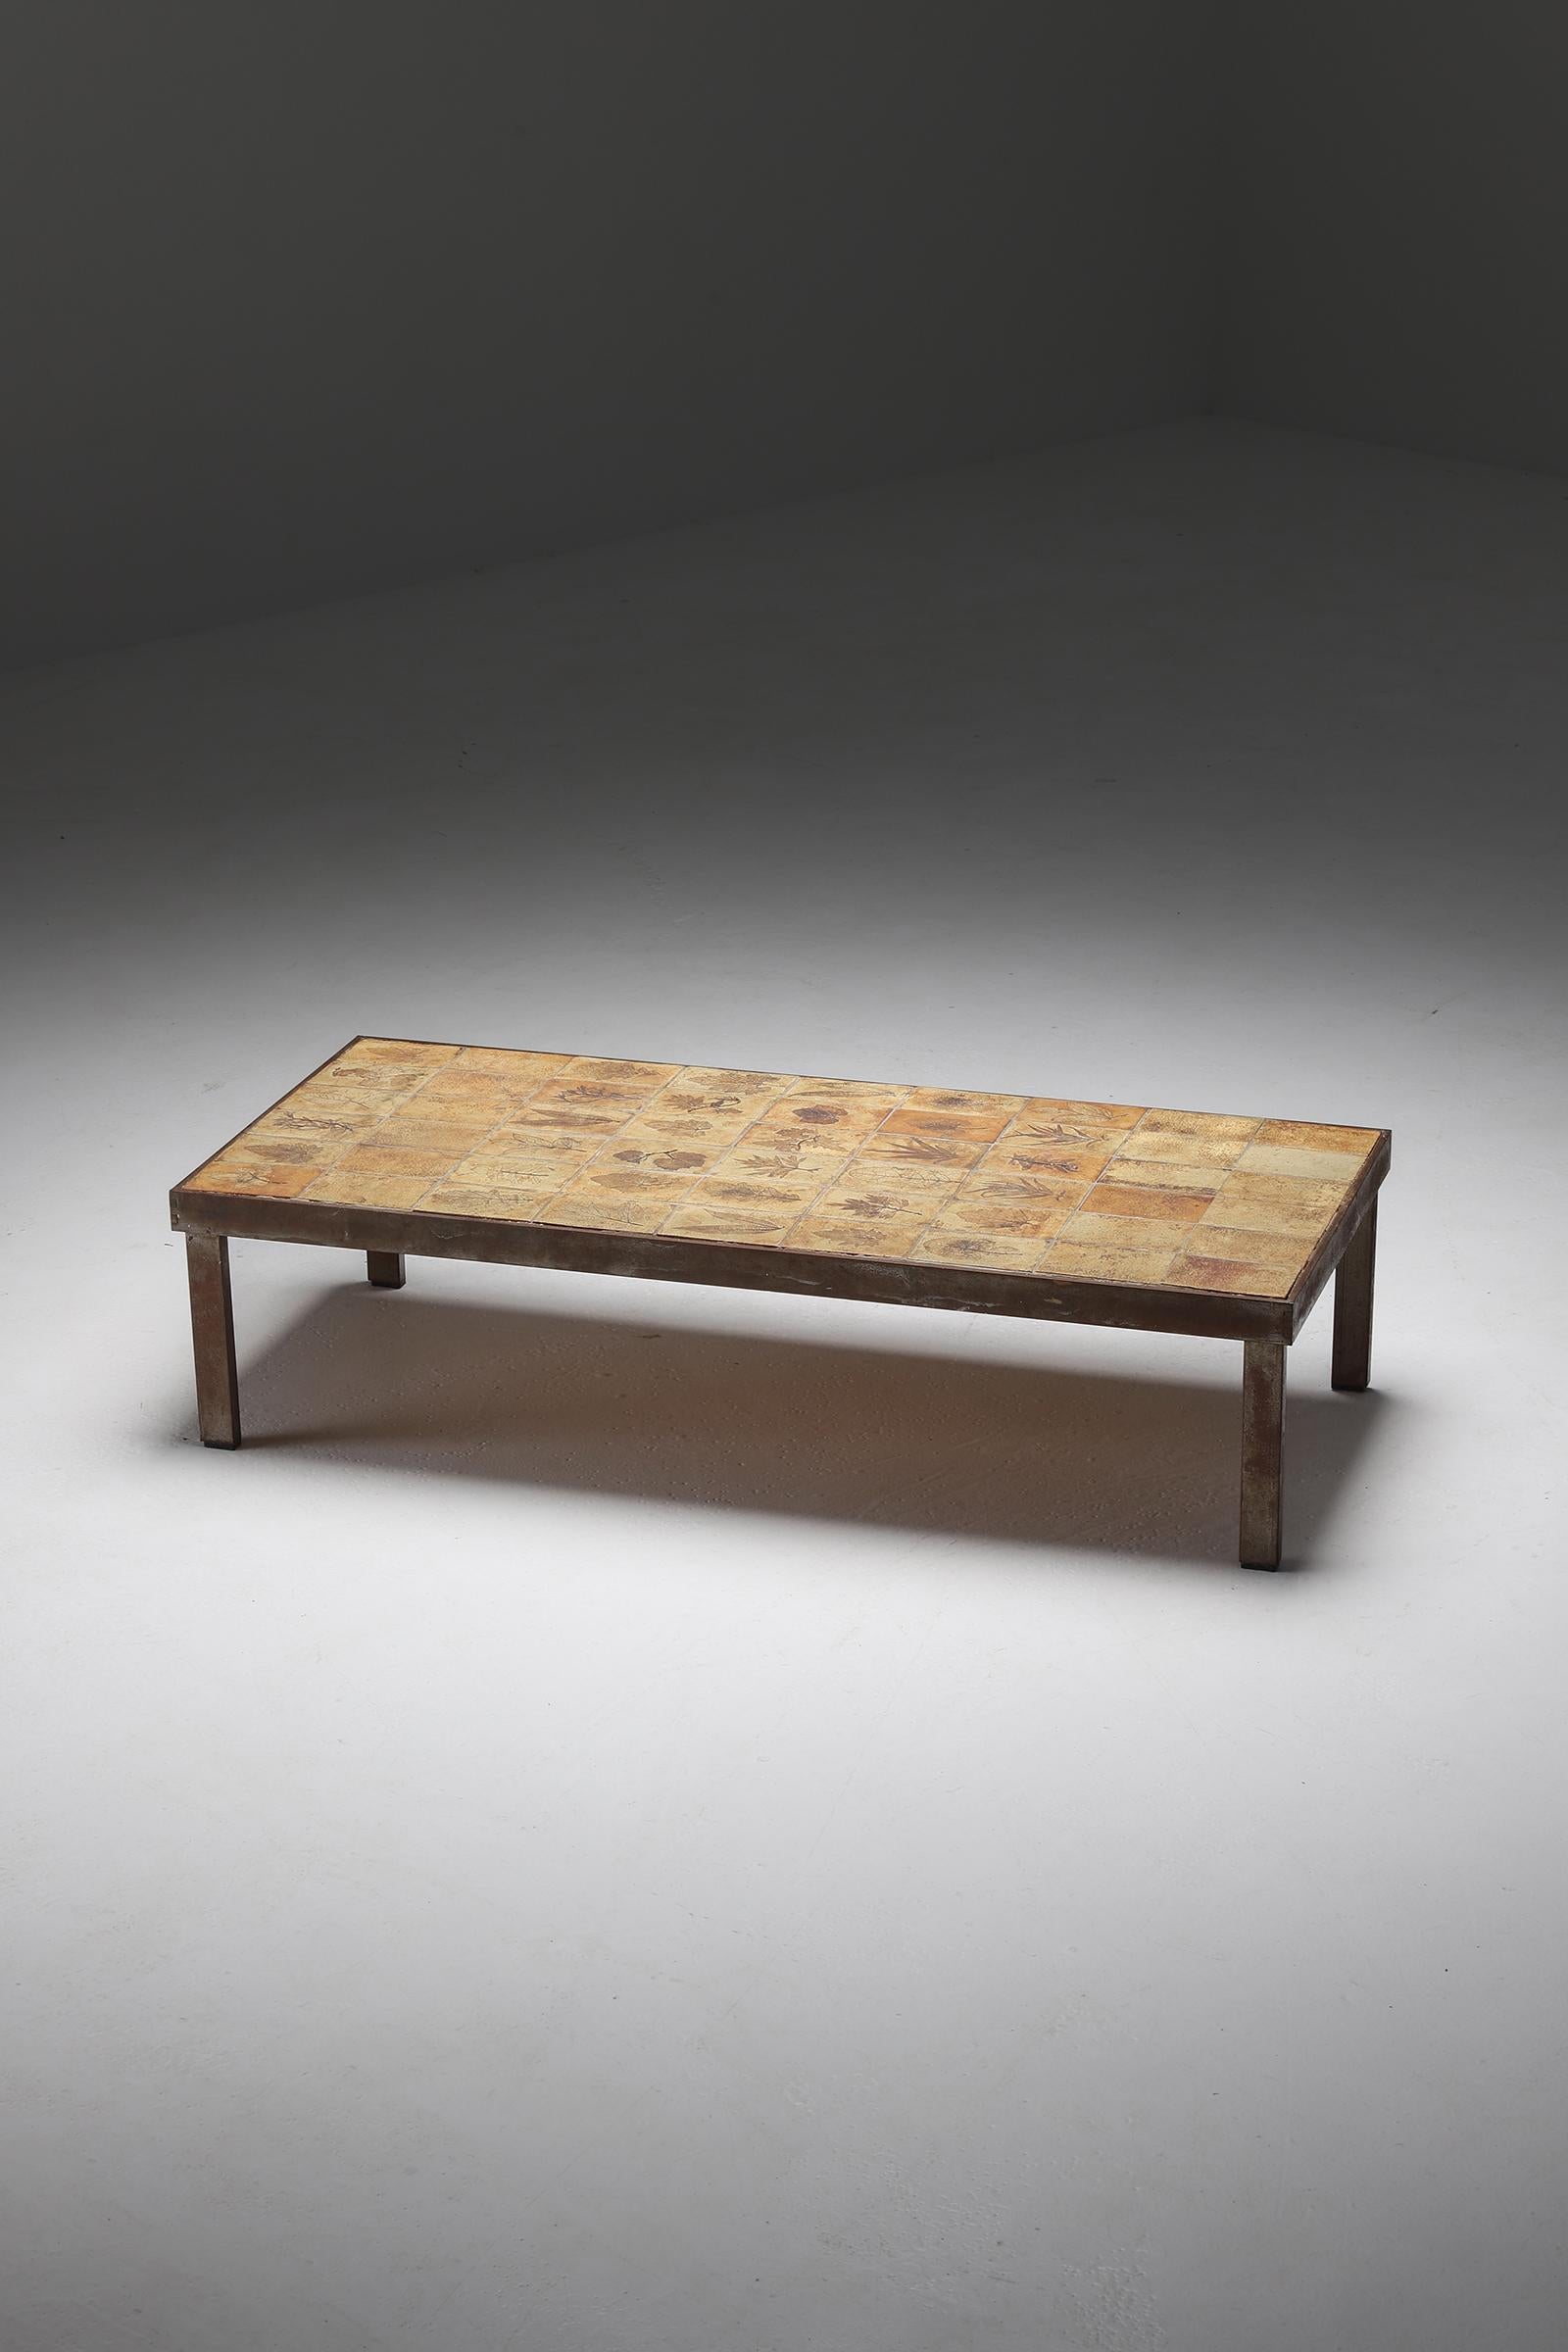 Table basse rectangulaire Garrigue de Roger Capron datant des années 1960, Vallauris, France. La table a une structure et des pieds en métal et un plateau en céramique avec des motifs d'herbier incrustés. Les carreaux artisanaux sont fabriqués selon